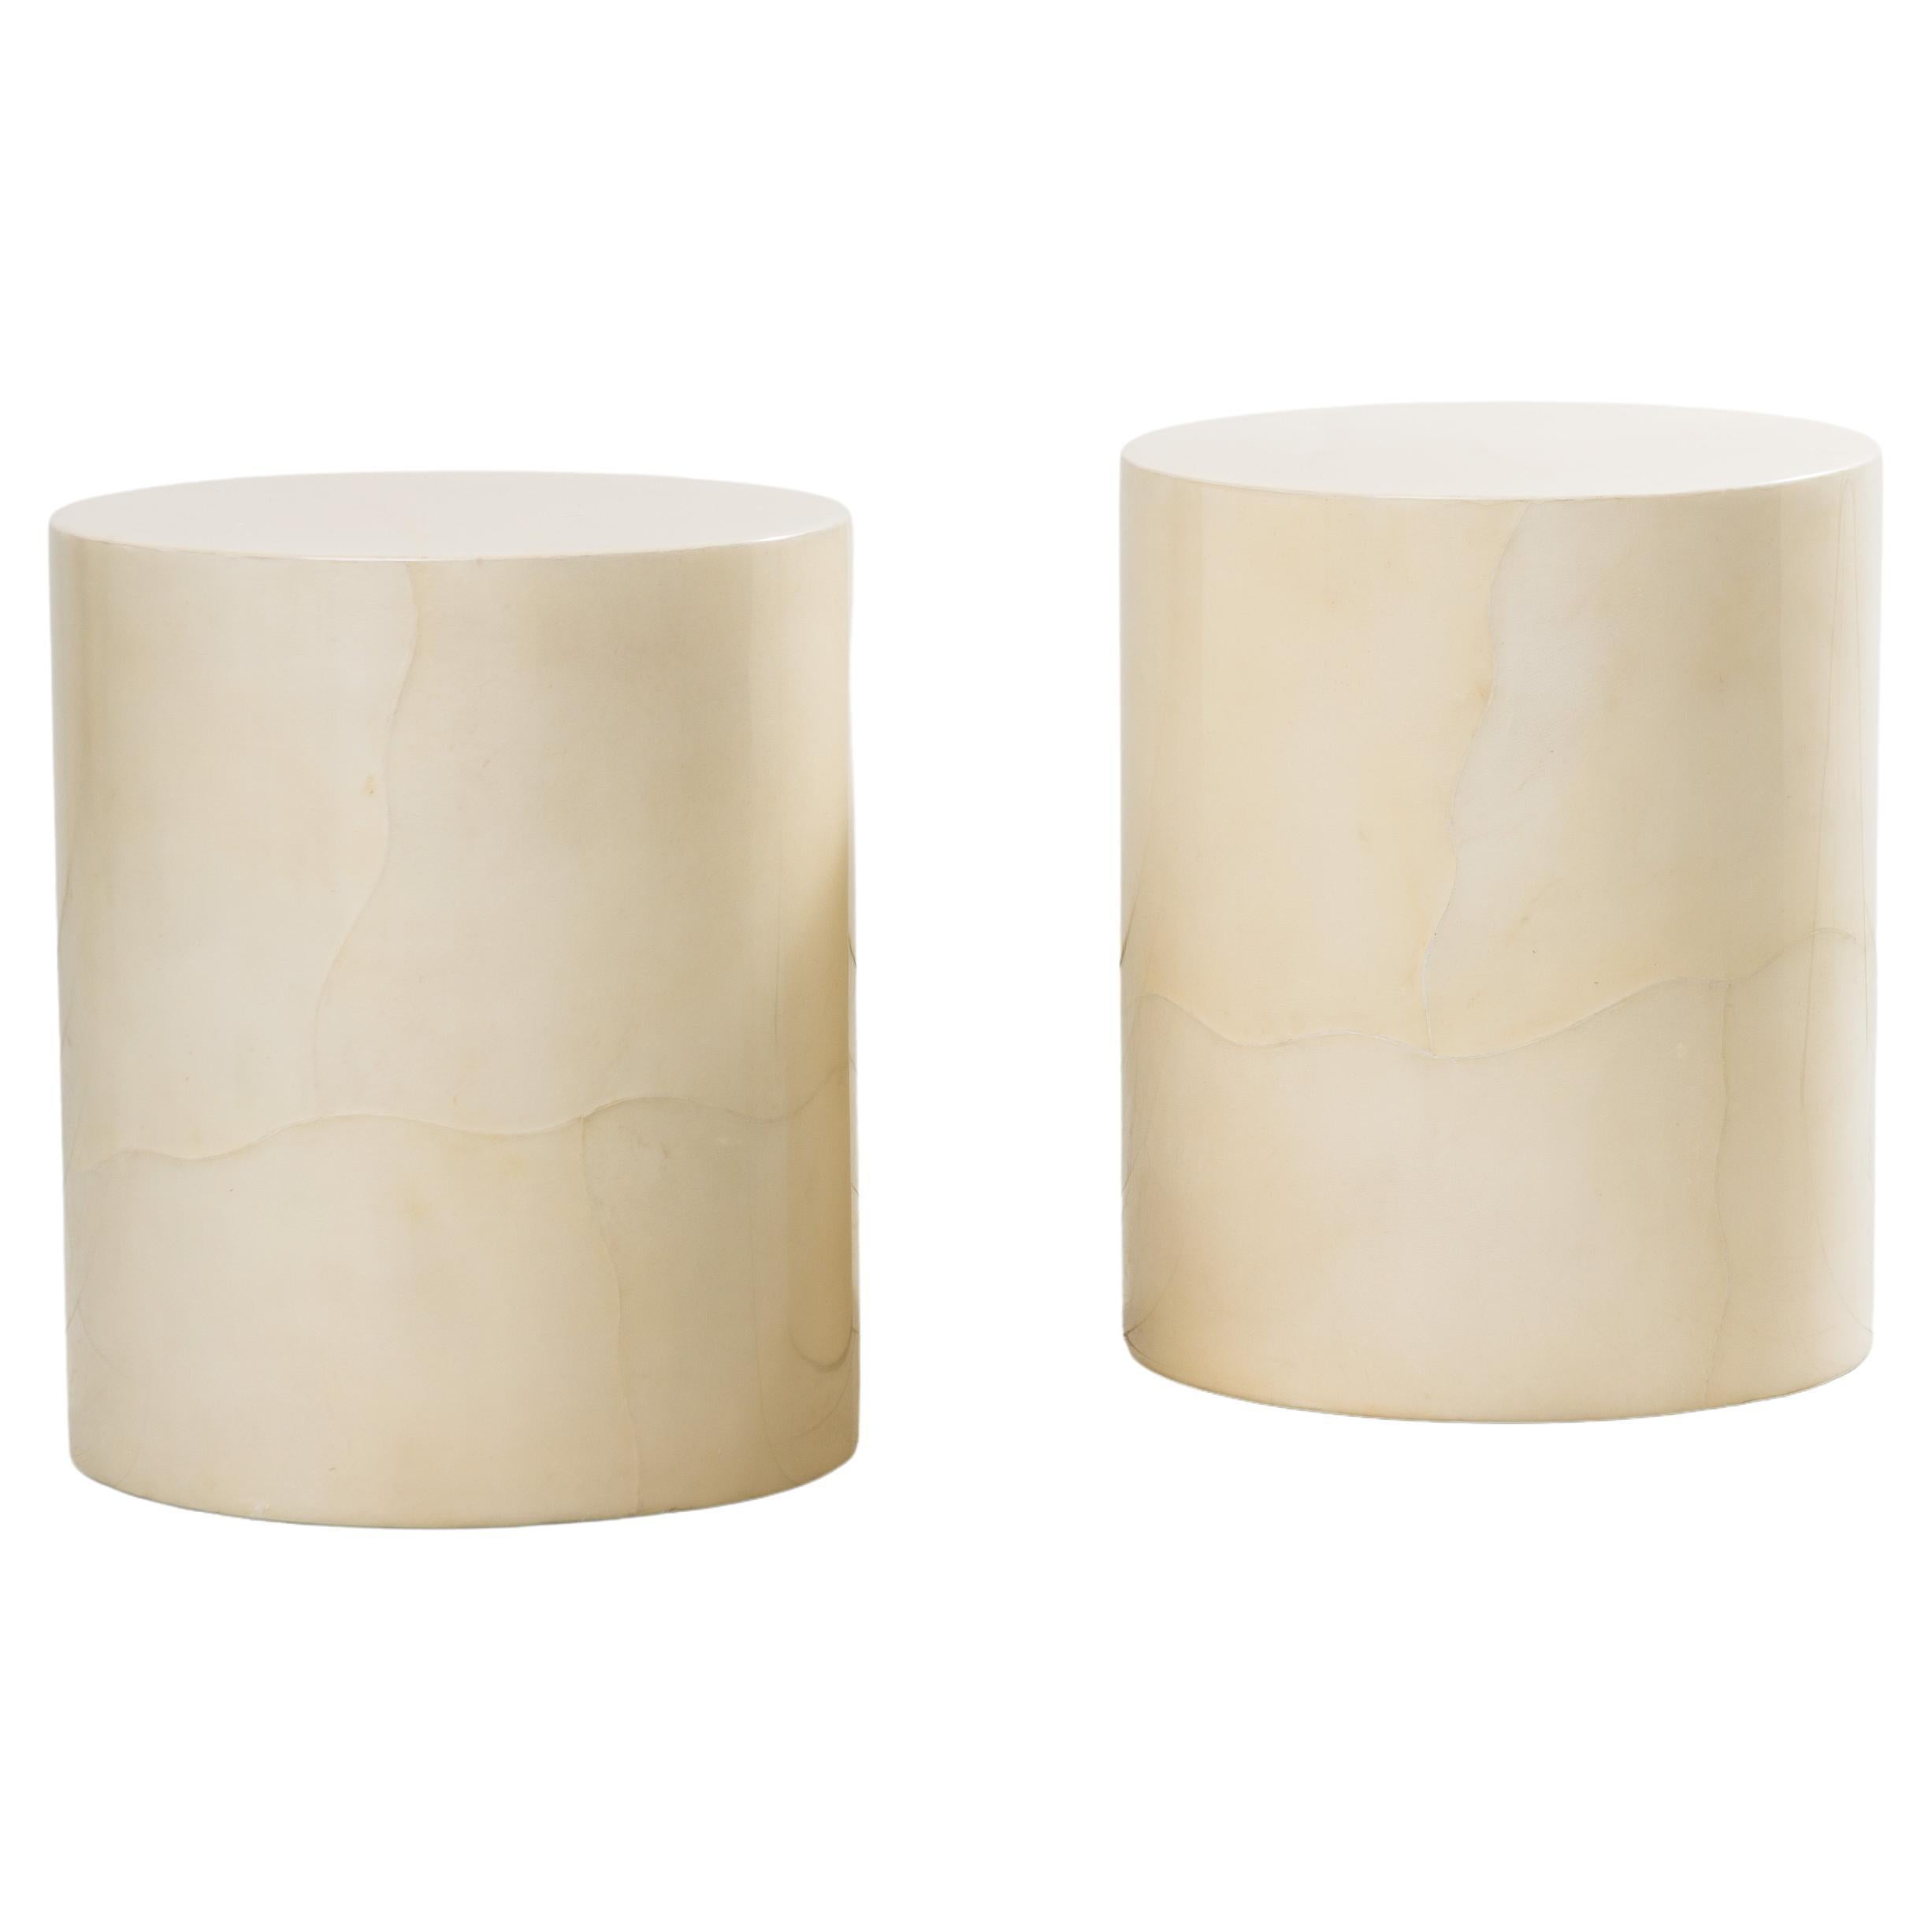 Karl Springer Ltd, Lacquered Column Goatskin Column Side Tables, USA